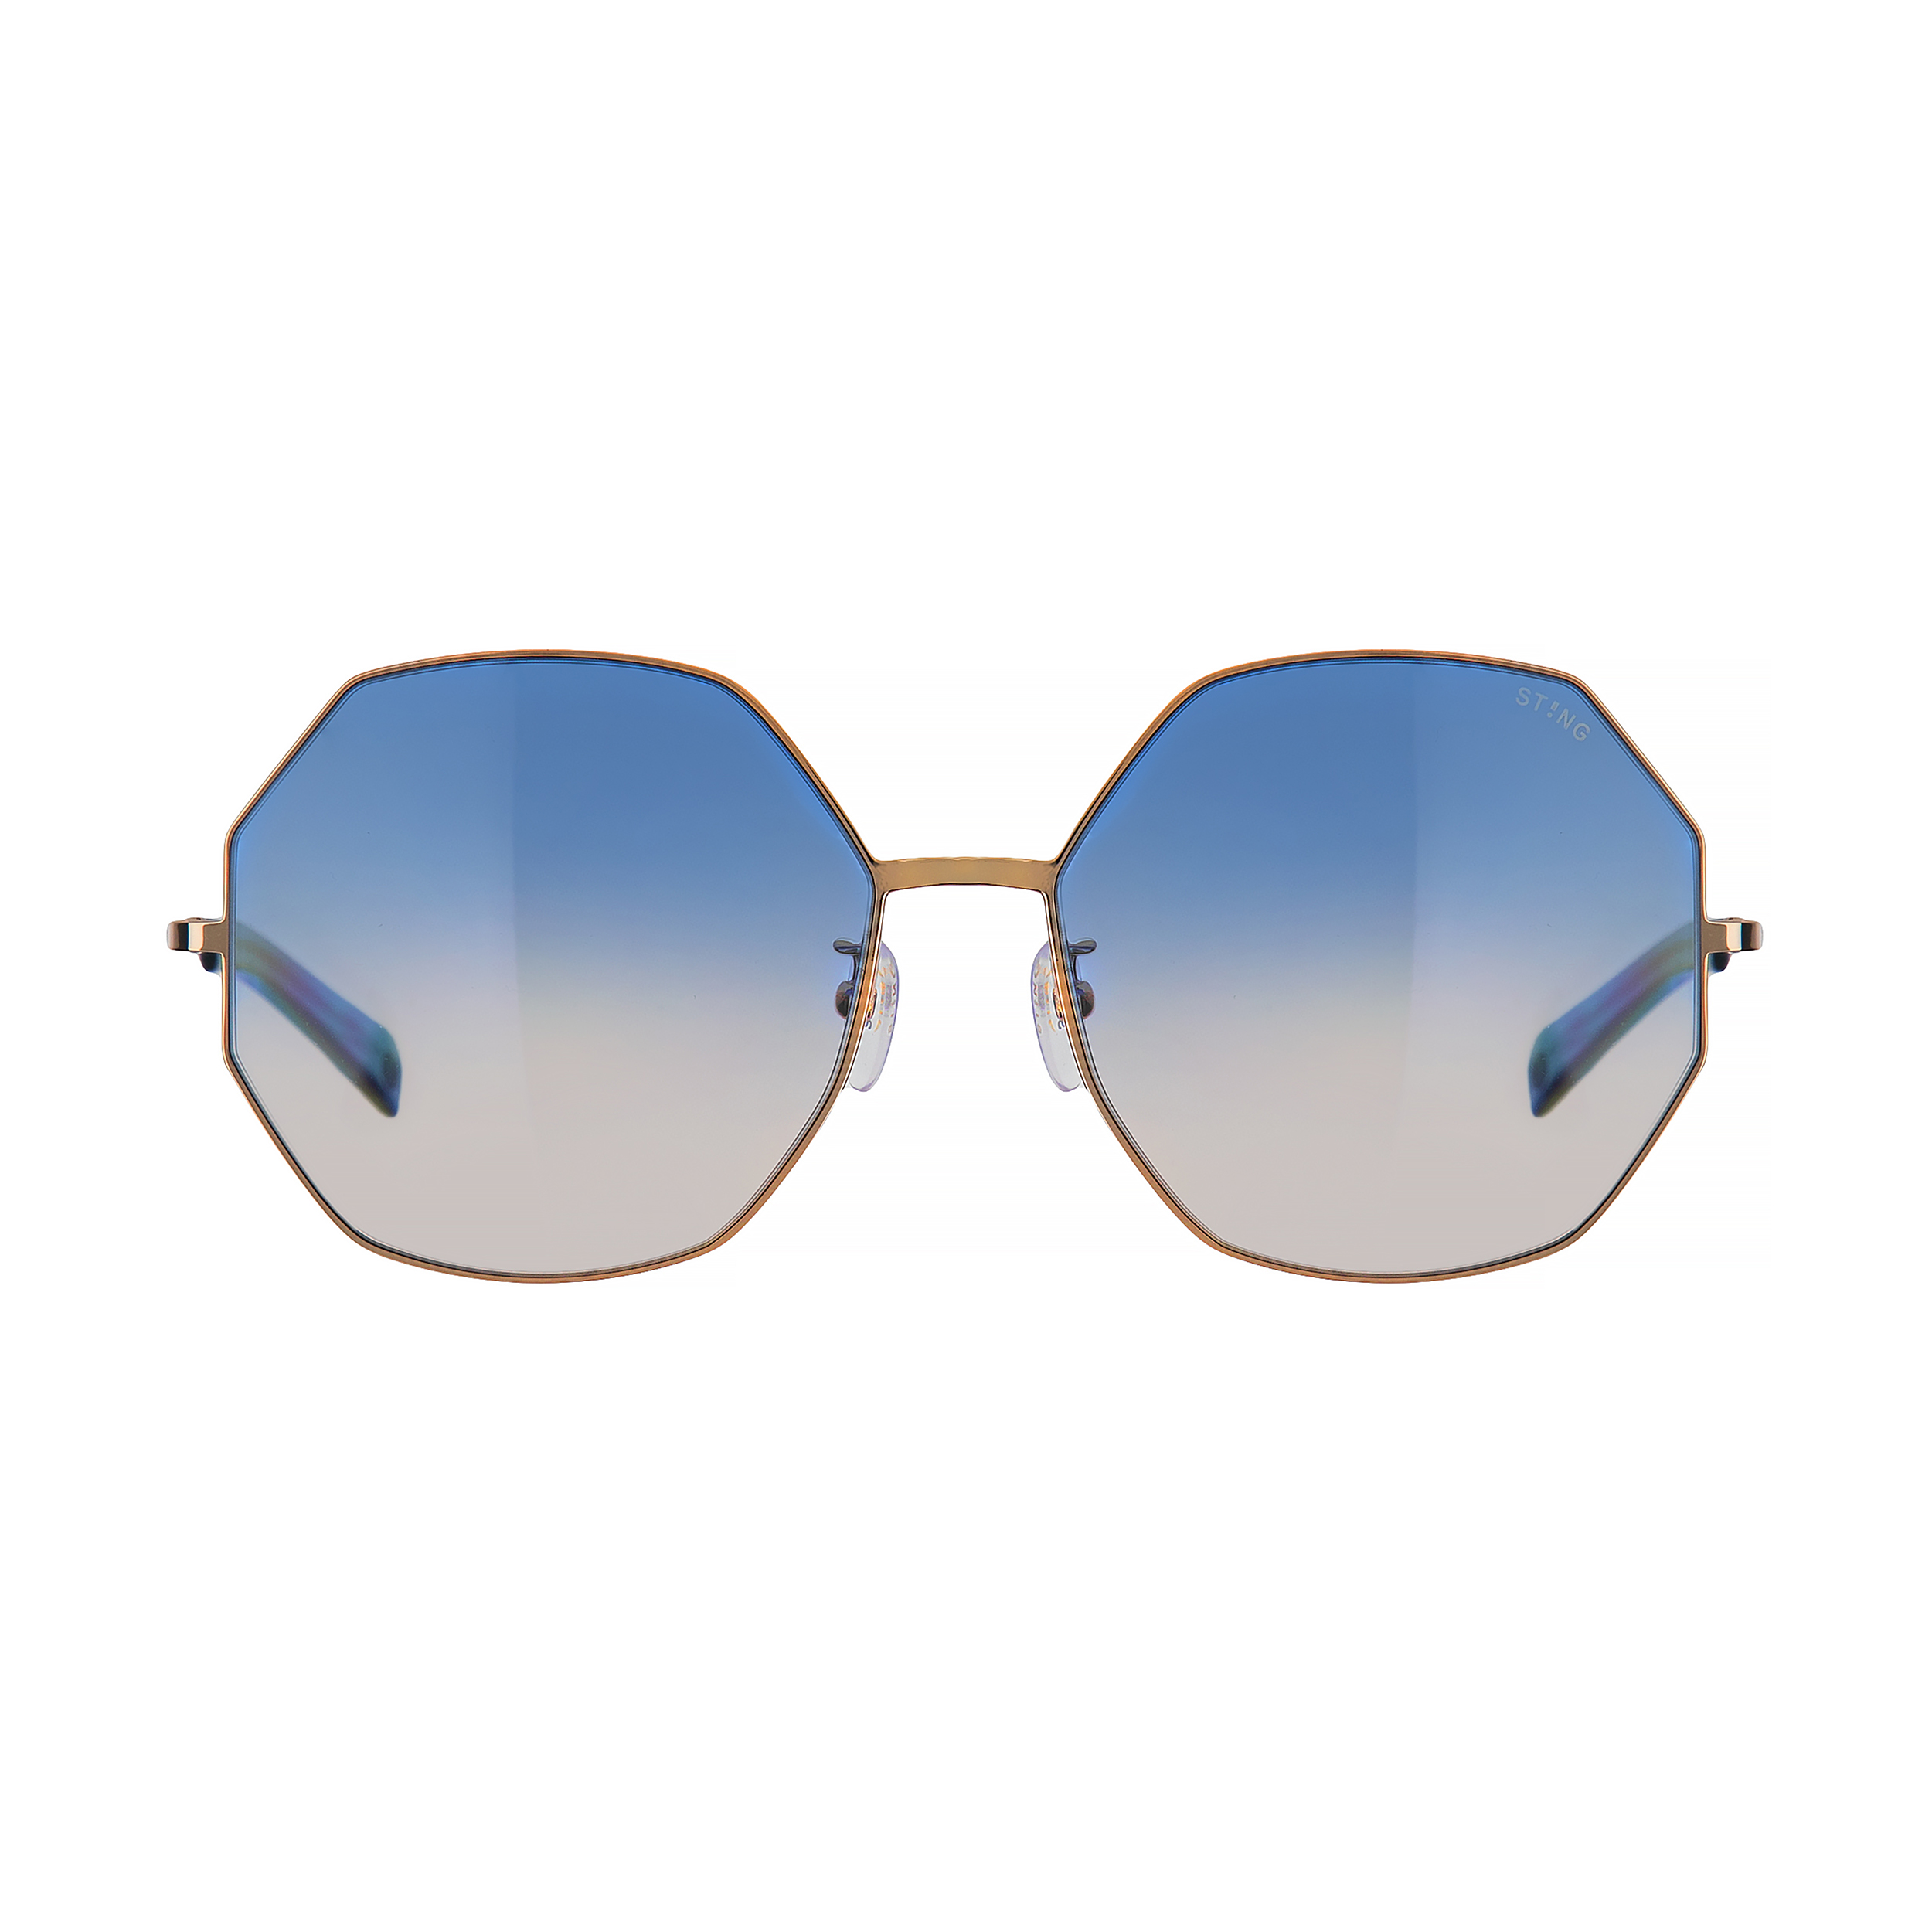 عینک آفتابی زنانه استینگ مدل SST213 08FE